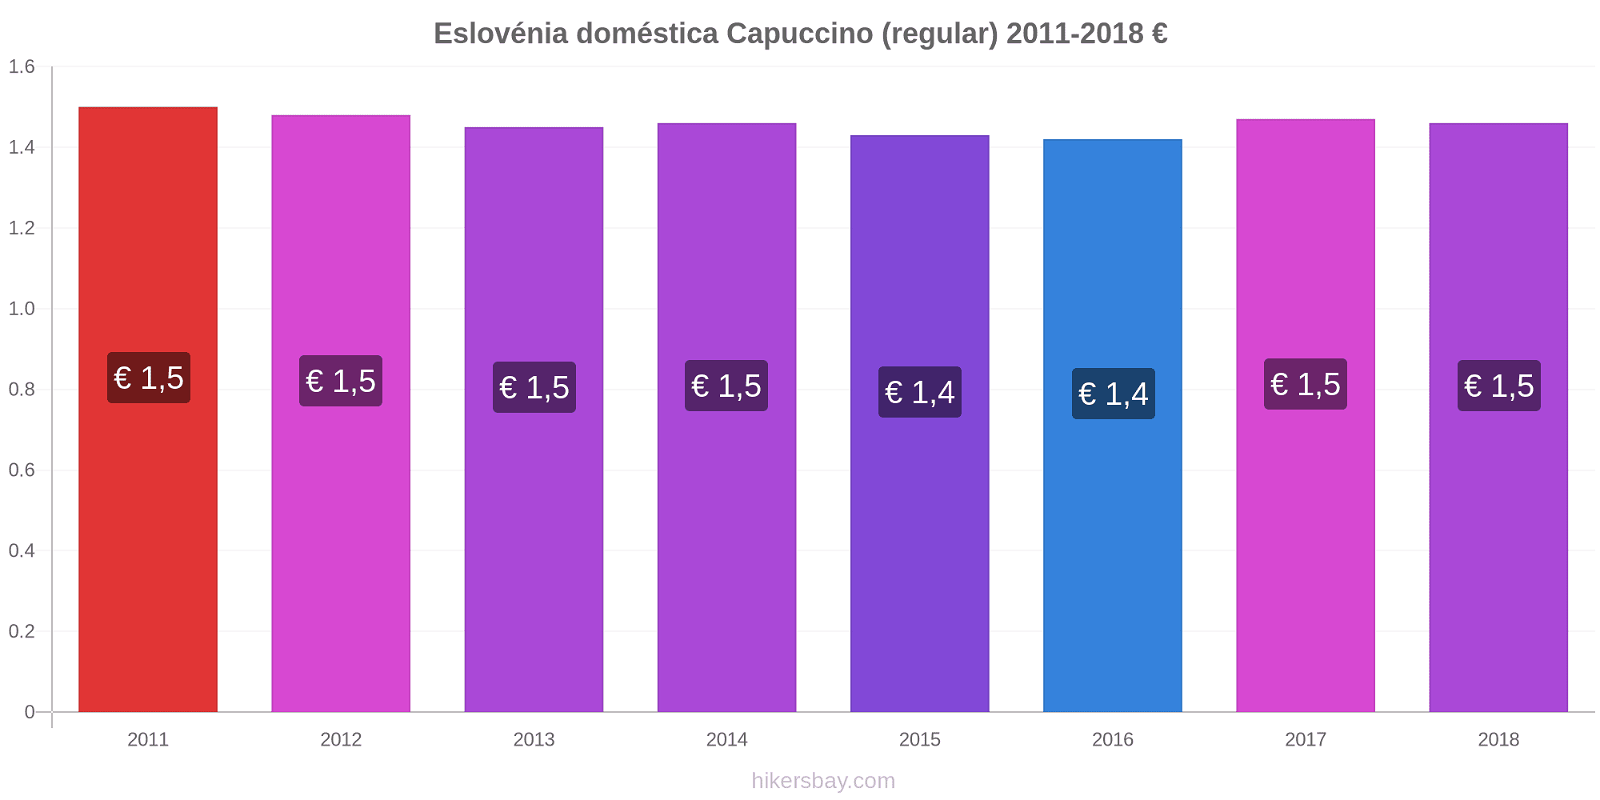 Eslovénia doméstica variação de preço Capuccino (regular) hikersbay.com